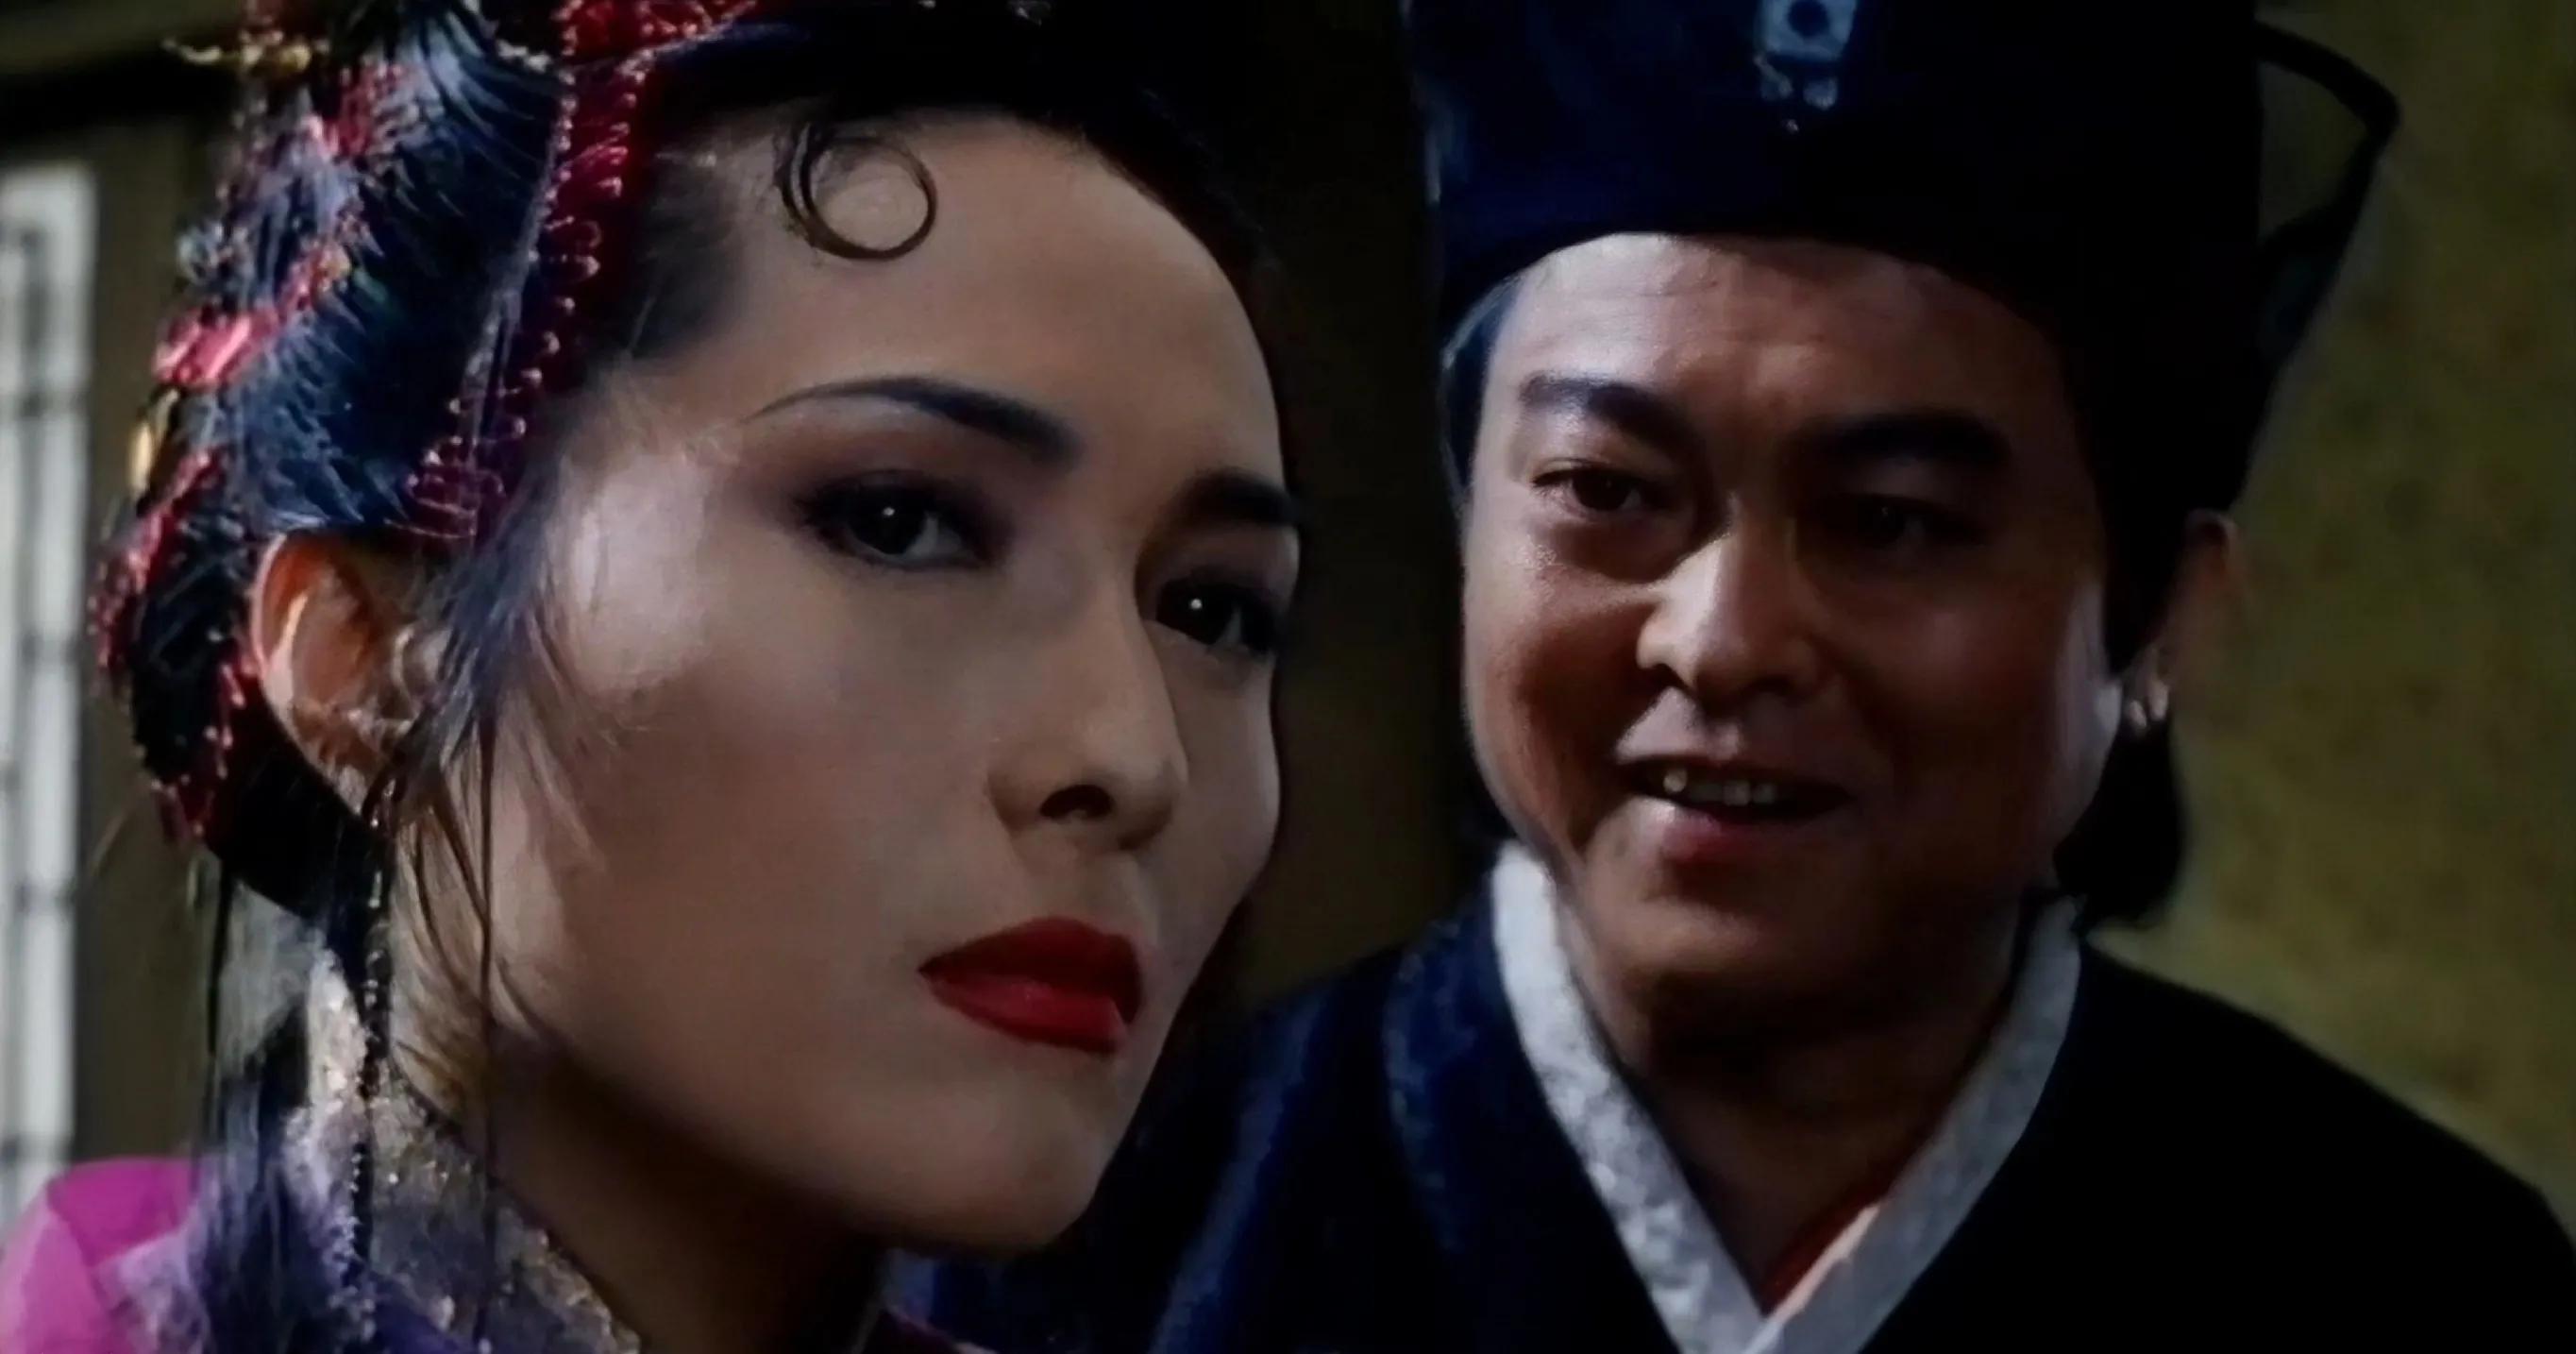 Mấy chục năm nhìn lại, cách makeup của loạt mỹ nhân TVB ngày xưa vẫn đẹp và "vào mắt" thế không ...